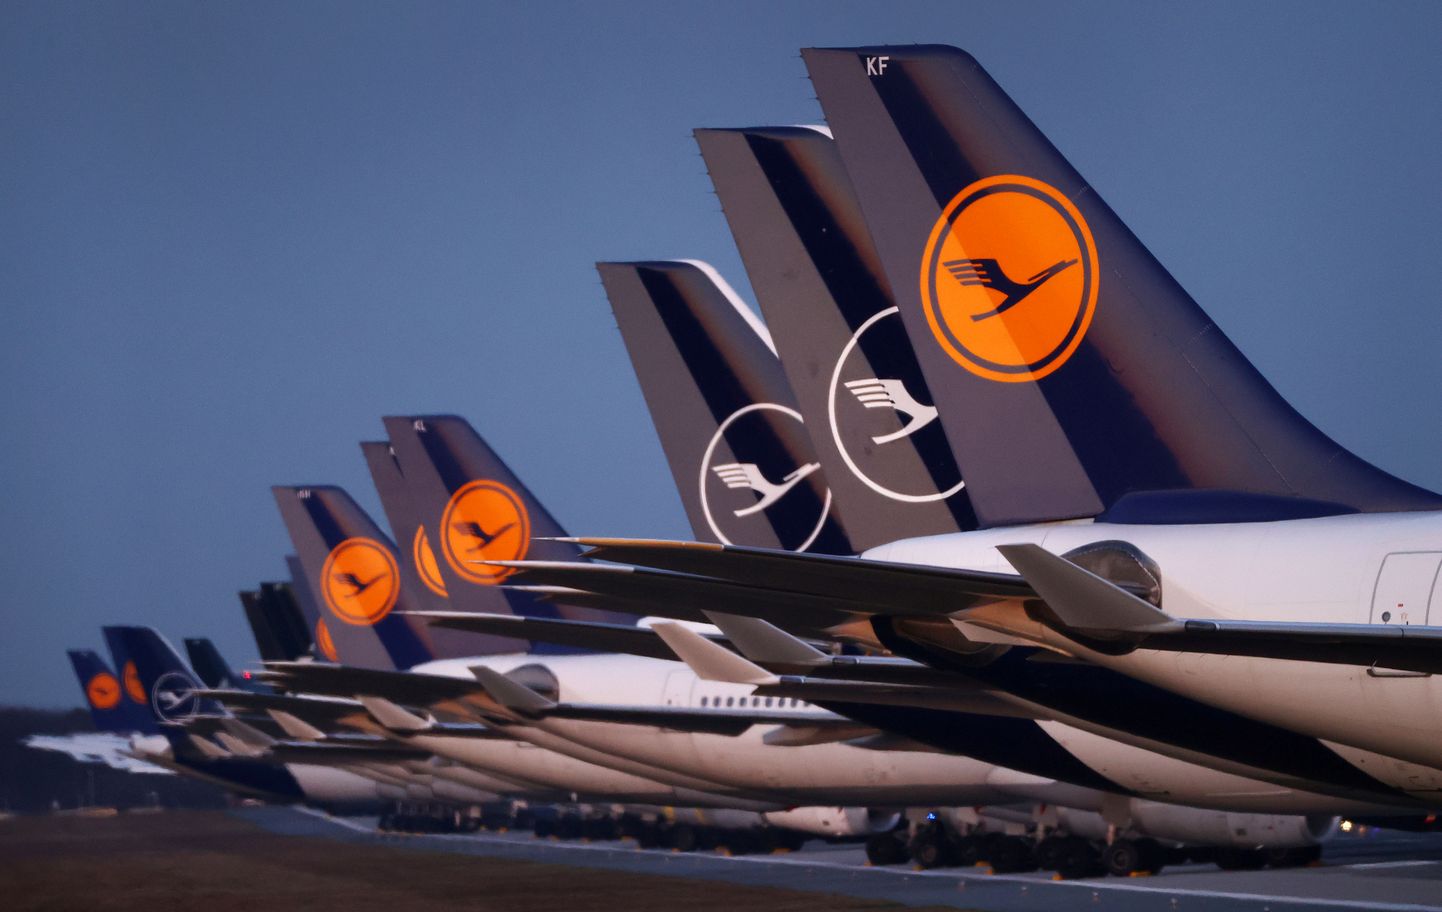 Saksa lennufirna Lufthansa lennukid pargituna Frankfurdi rahvusvahelise lennujaama lennuväljal